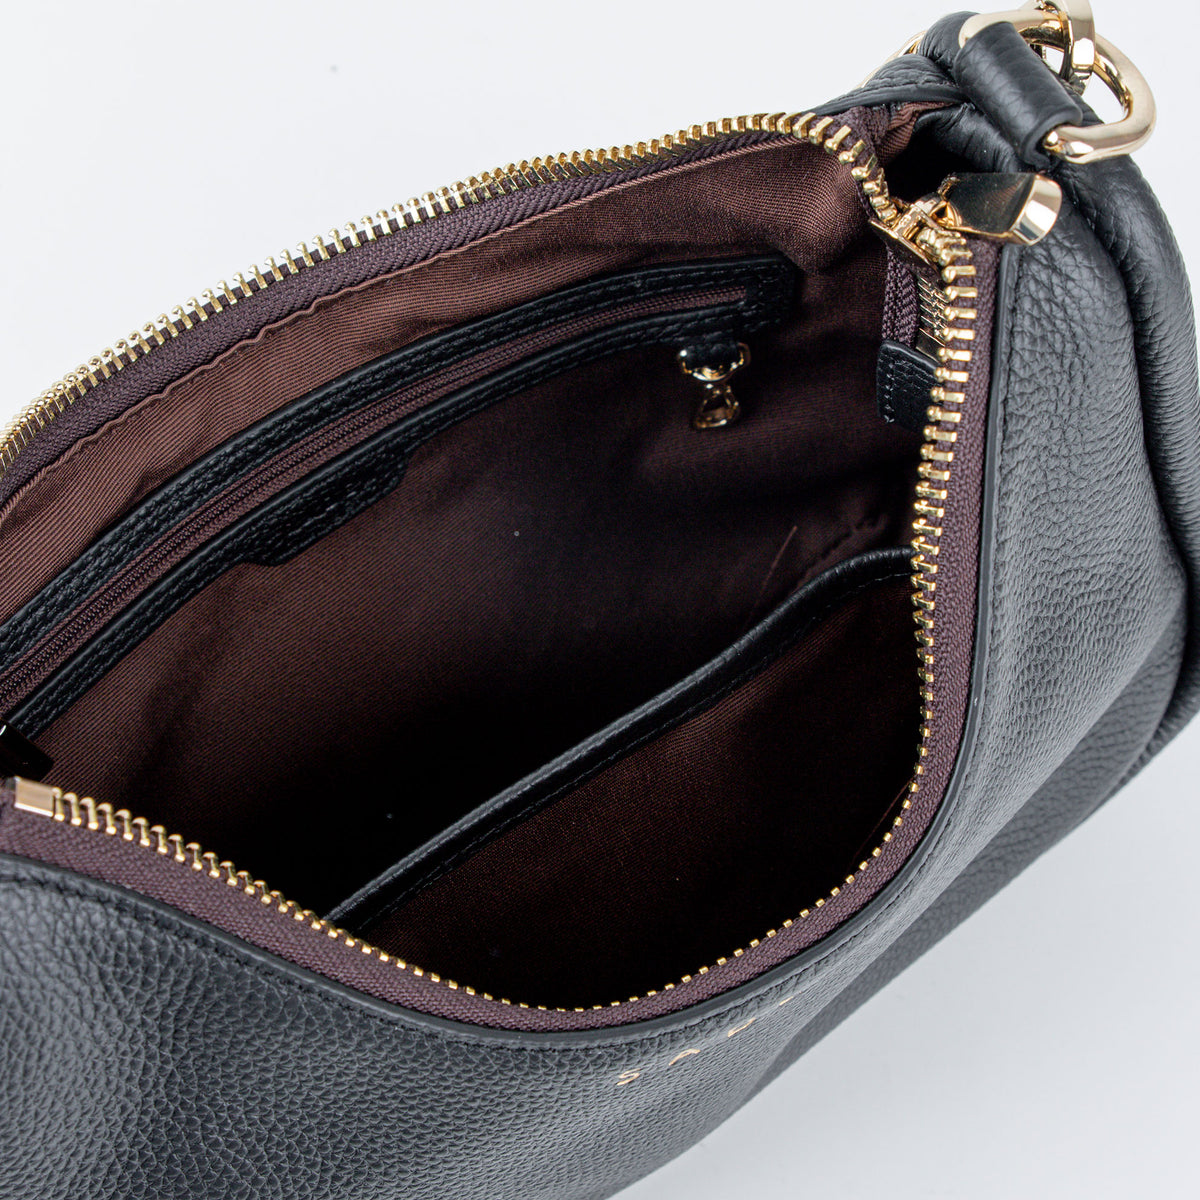 inside view of saben black odette handbag made from 100% real leather